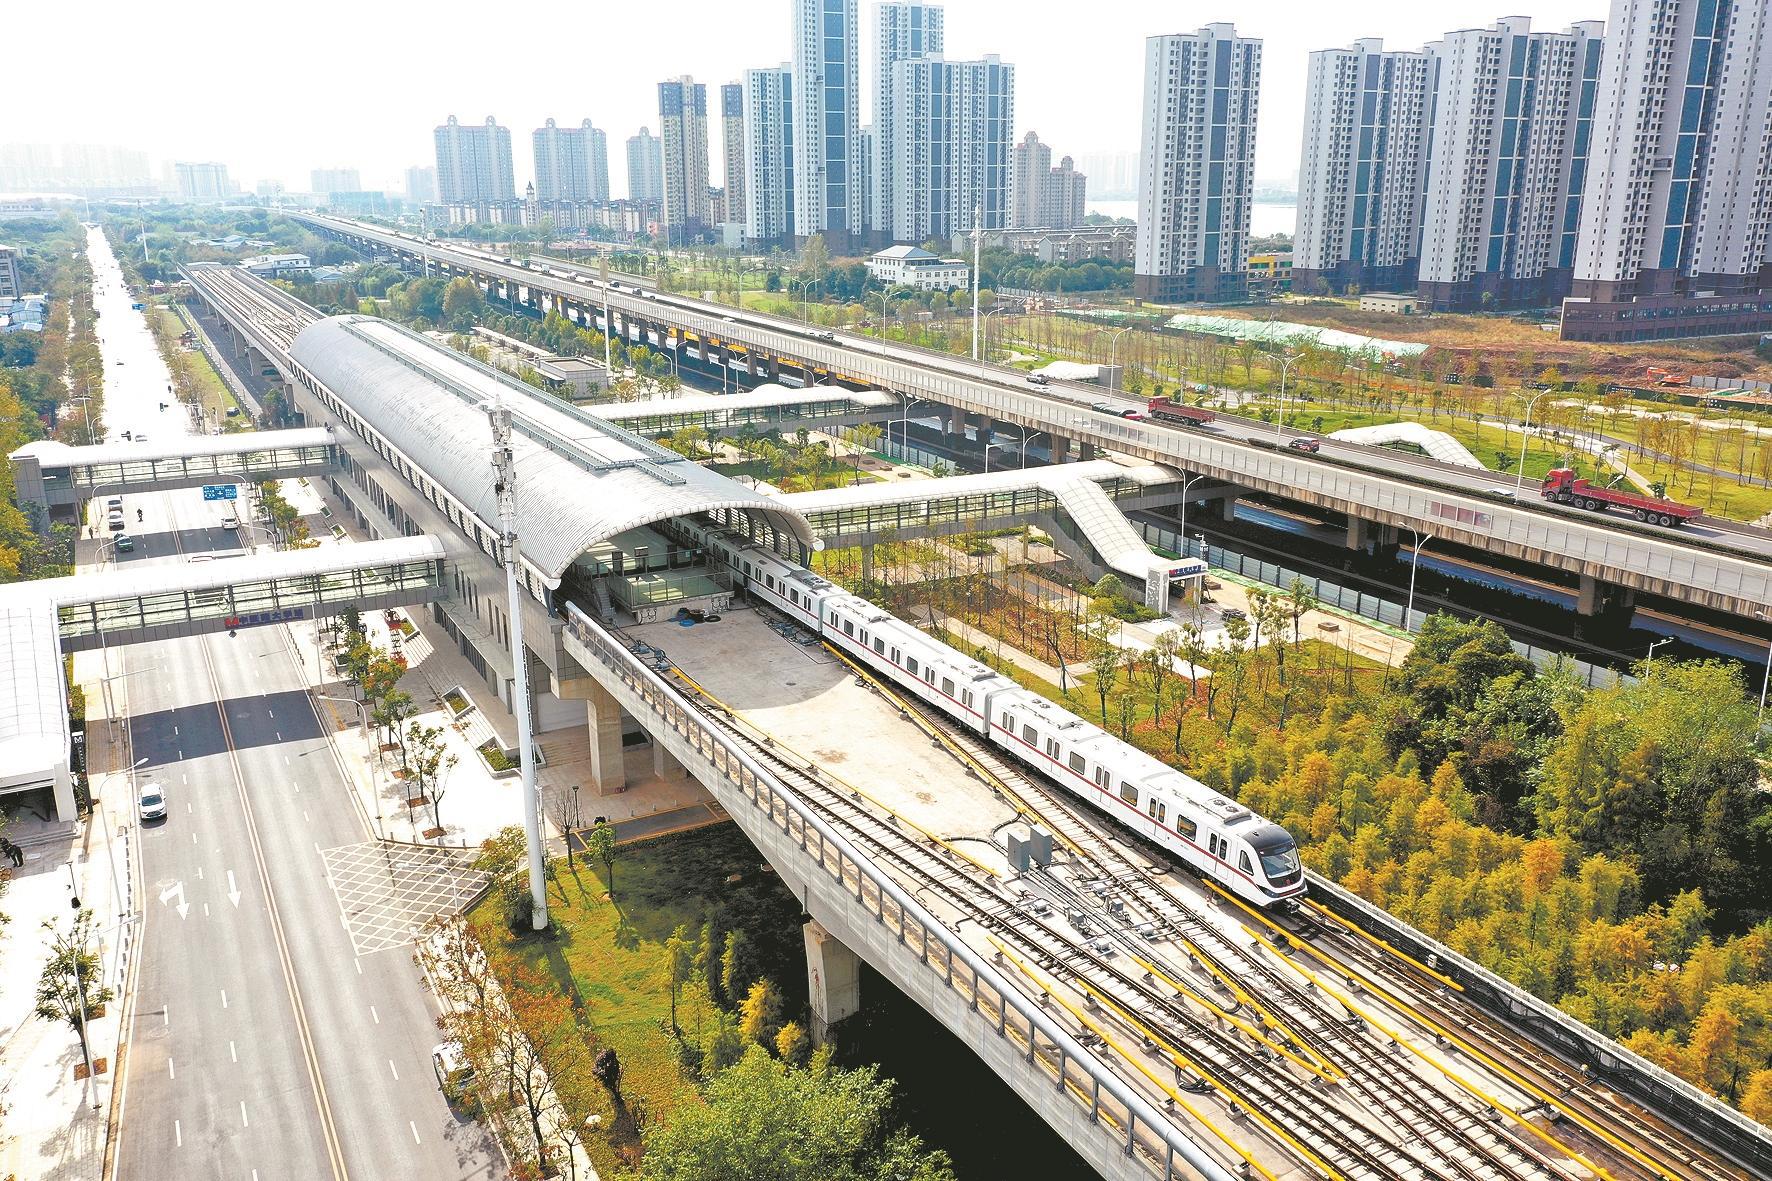 成都喜提新地铁,长729千米呈南北走向,为城市经济发展带来帮助